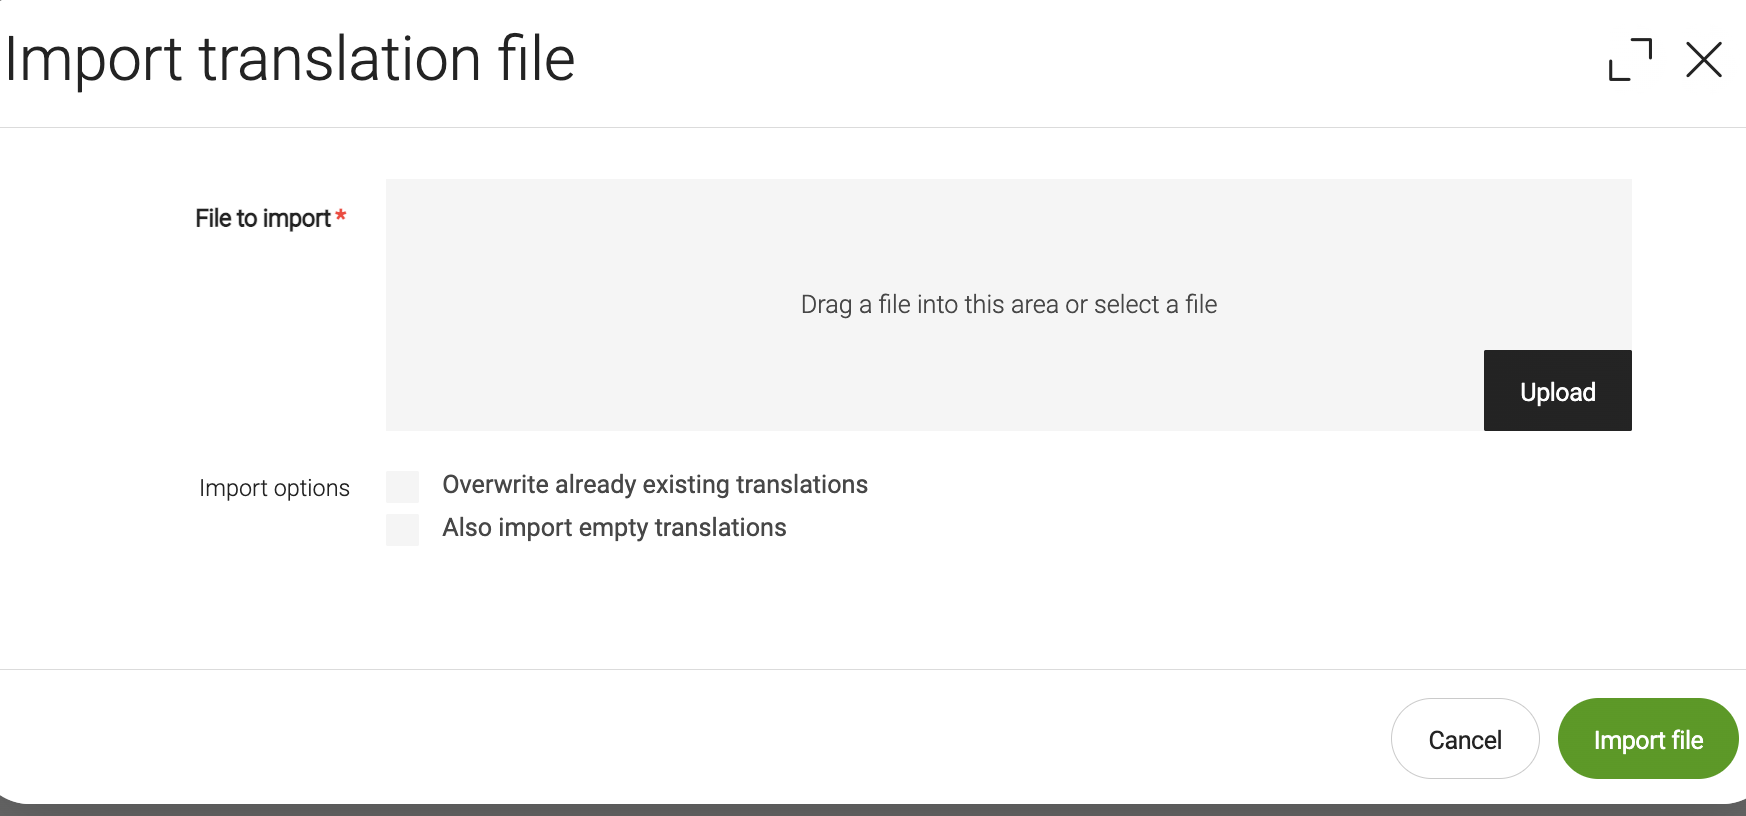 Import translation file